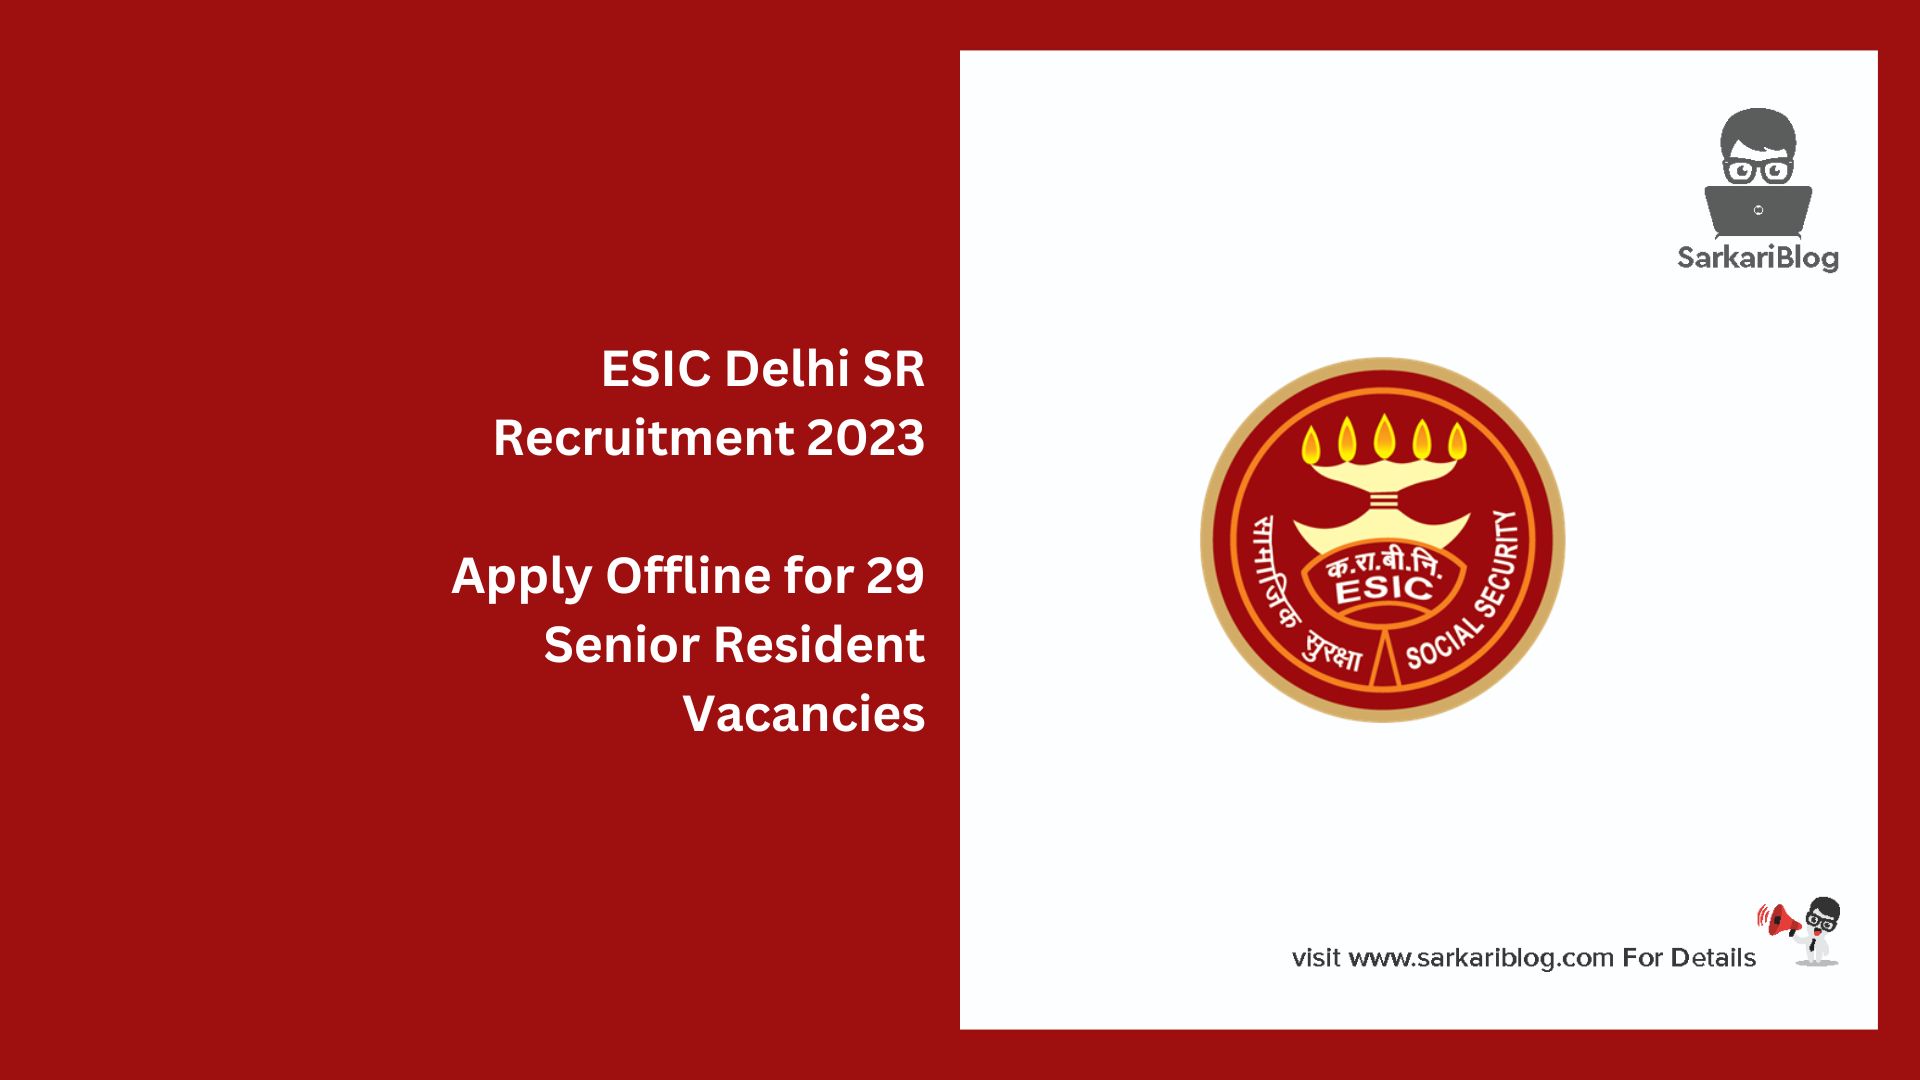 ESIC Delhi SR Recruitment 2023